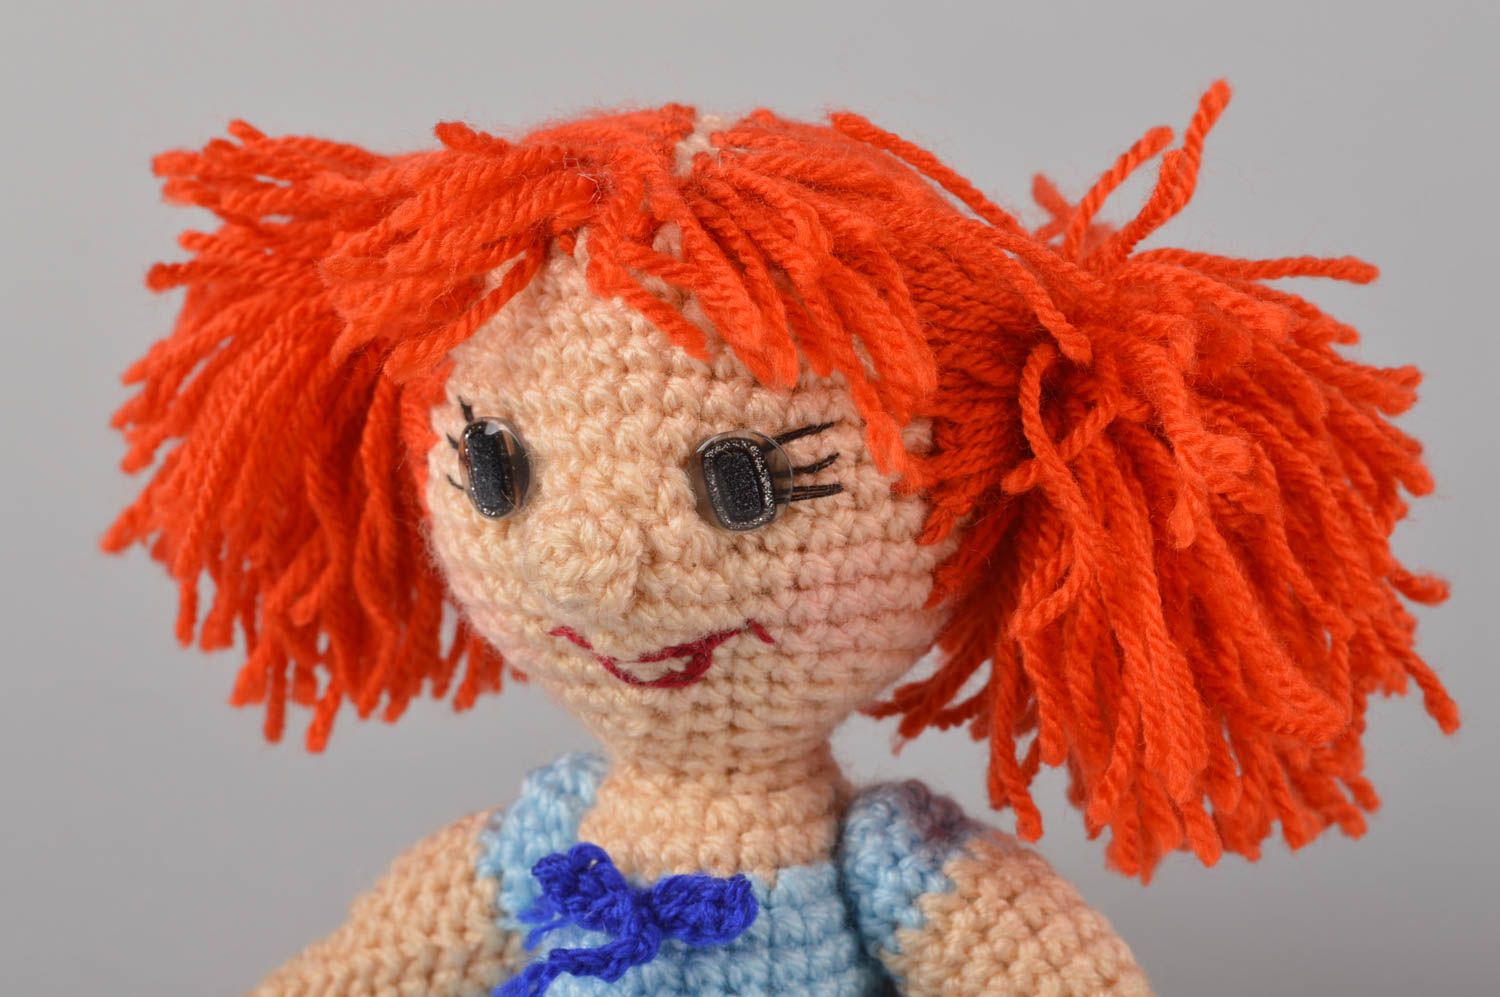 Handmade doll designer doll gift for baby crocheted doll nursery decor photo 5